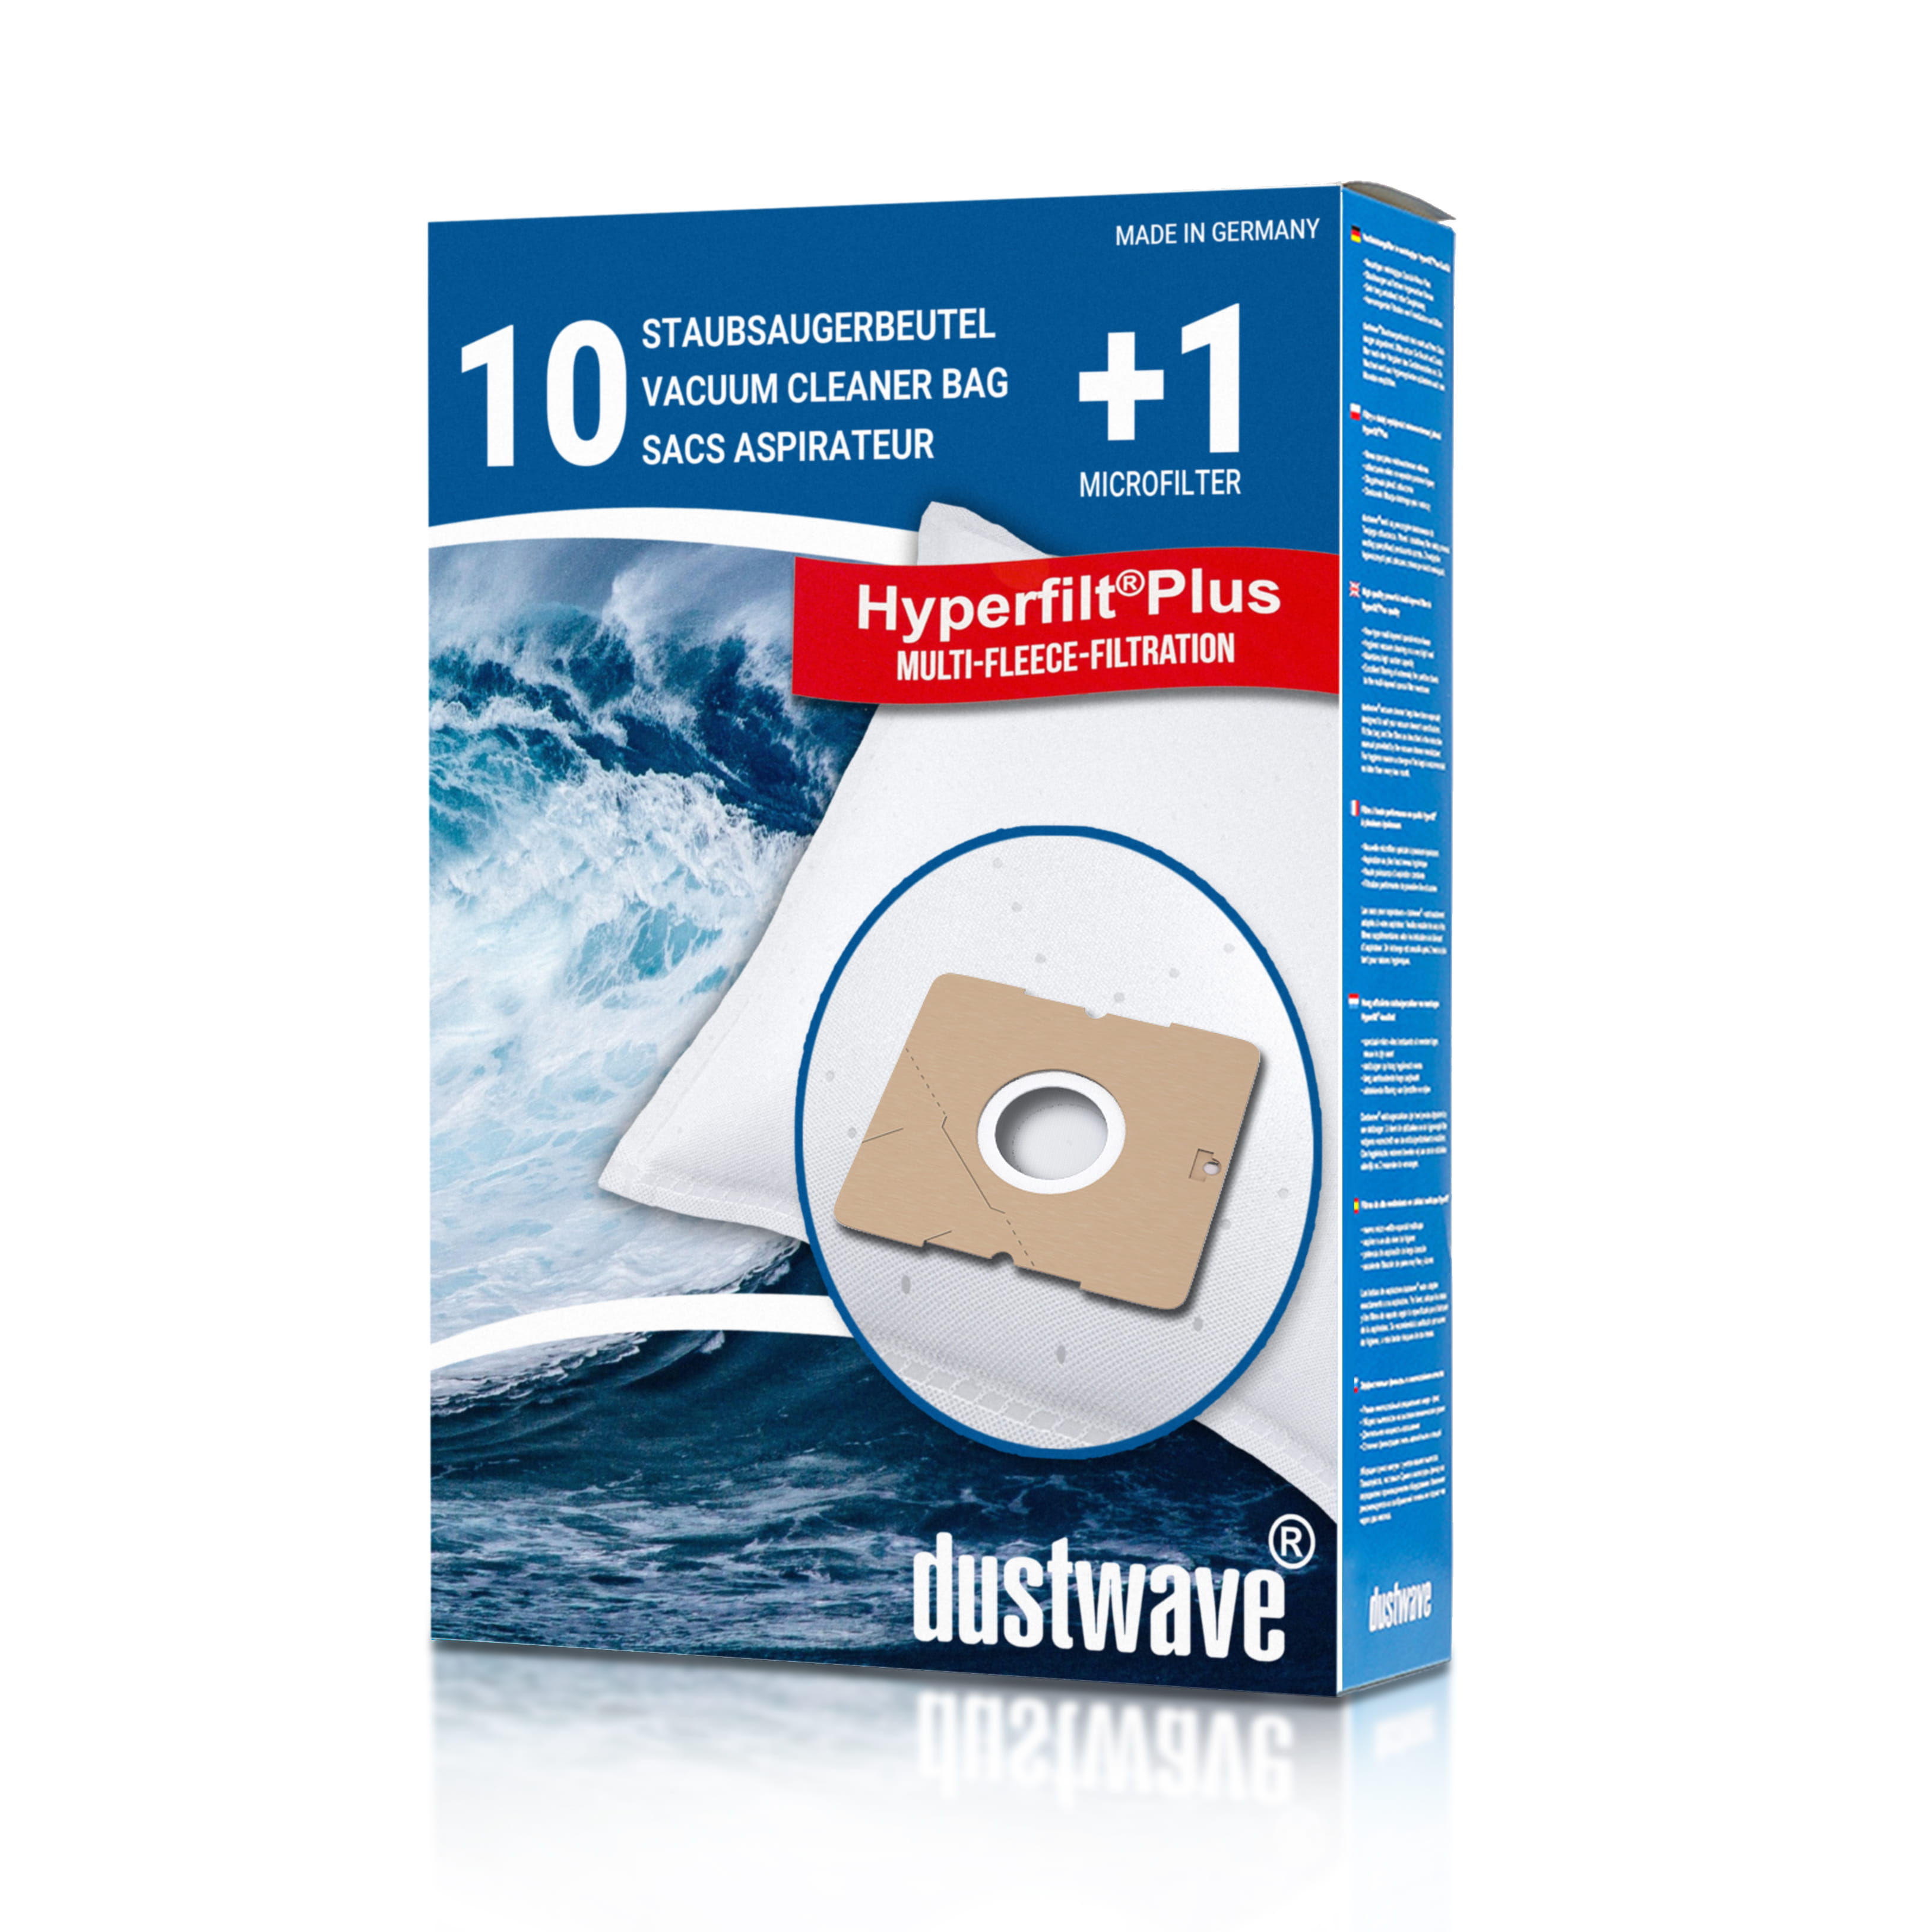 Dustwave® 10 Staubsaugerbeutel für Emerio VE-109959.14 - hocheffizient mit Hygieneverschluss - Made in Germany